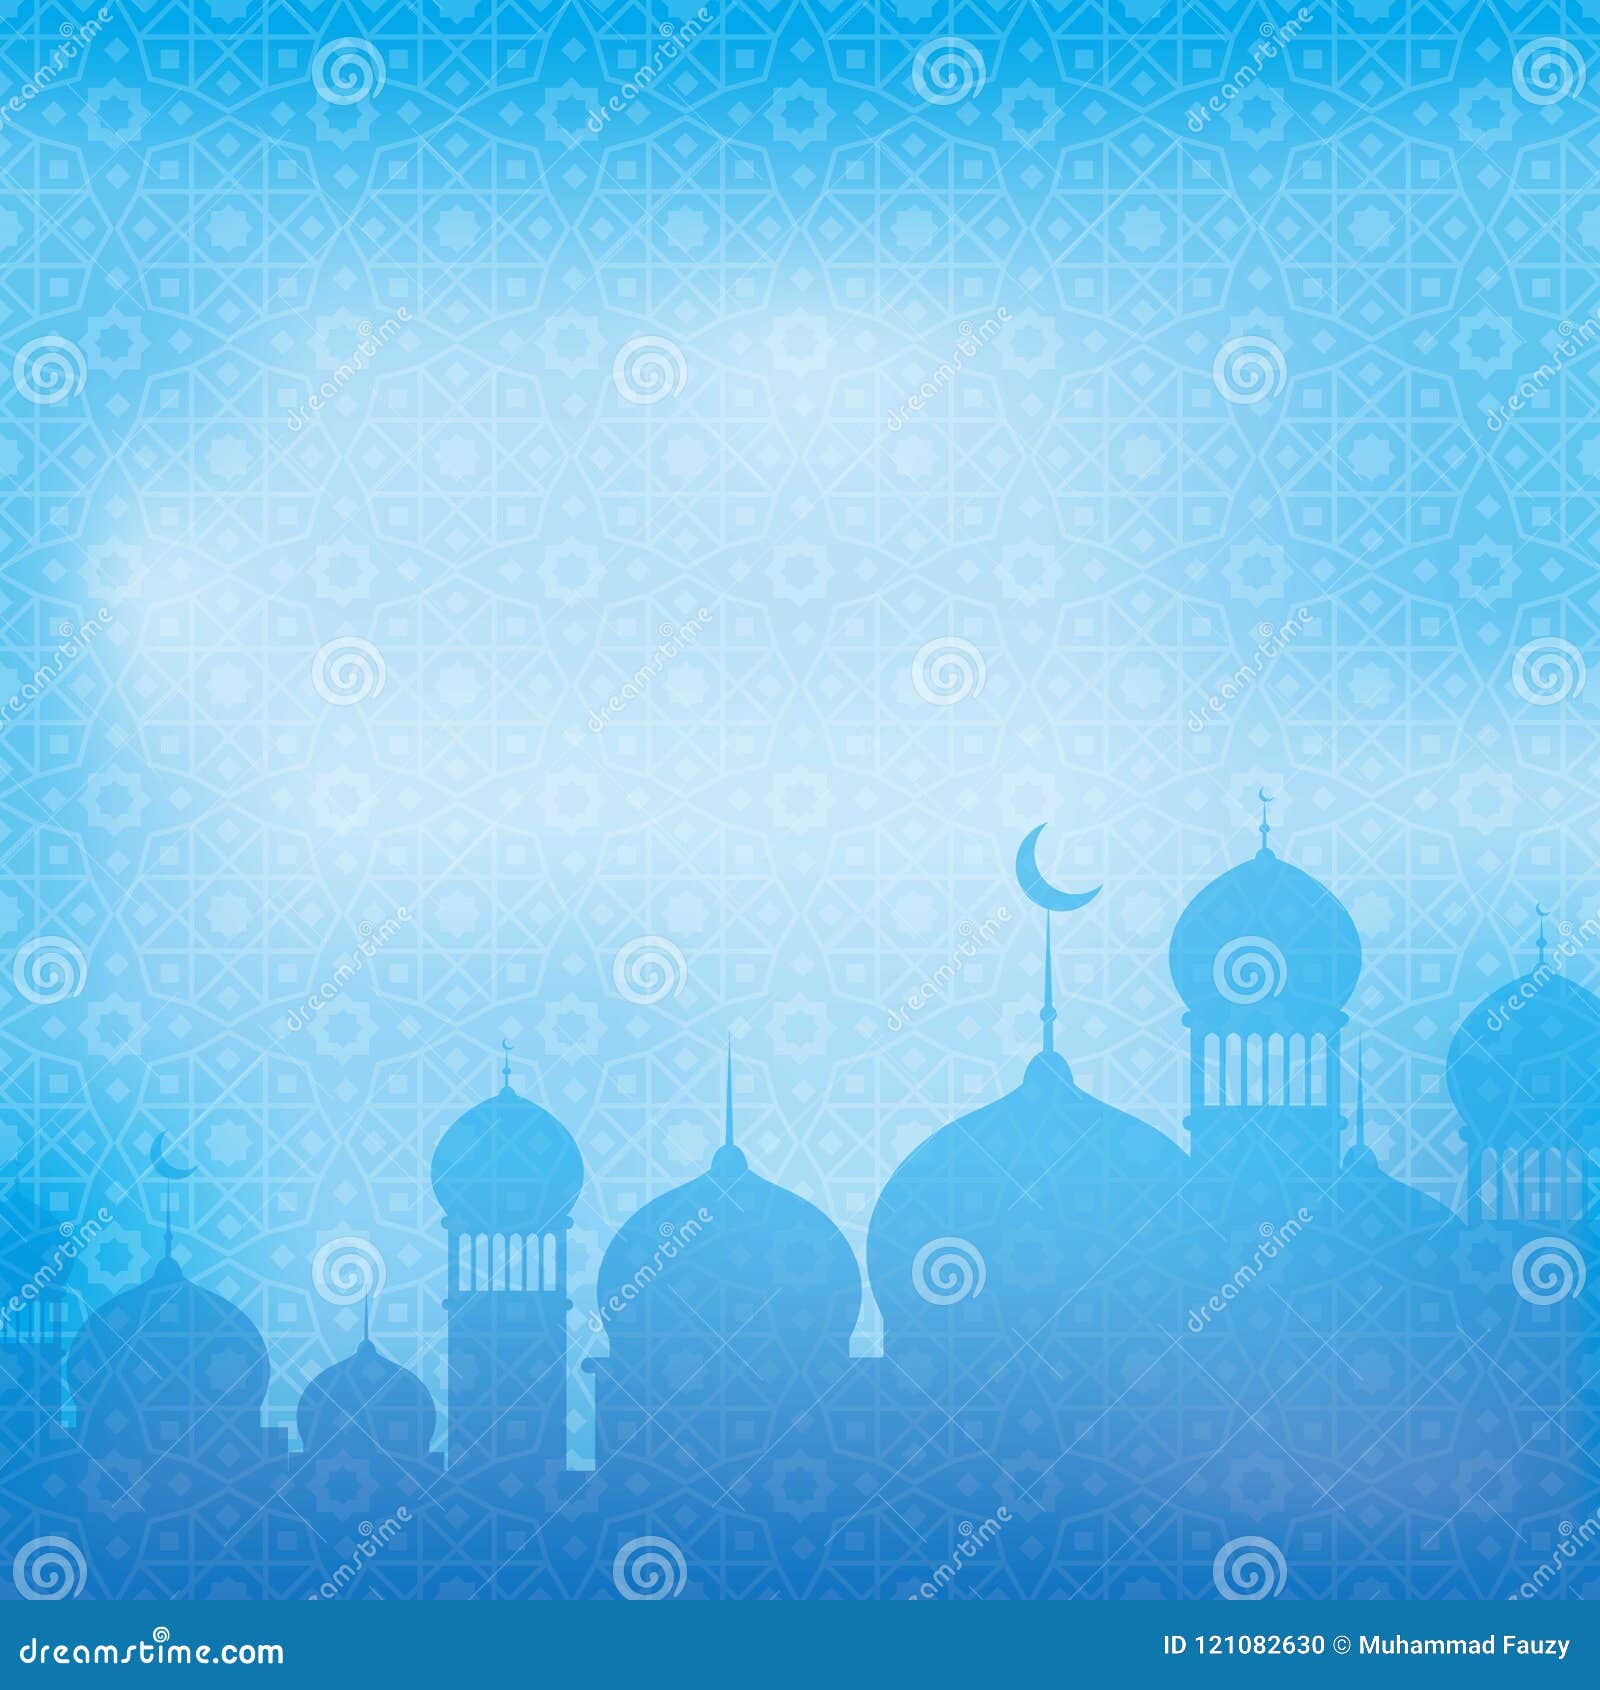 Islamic wallpaper Islam Desktop